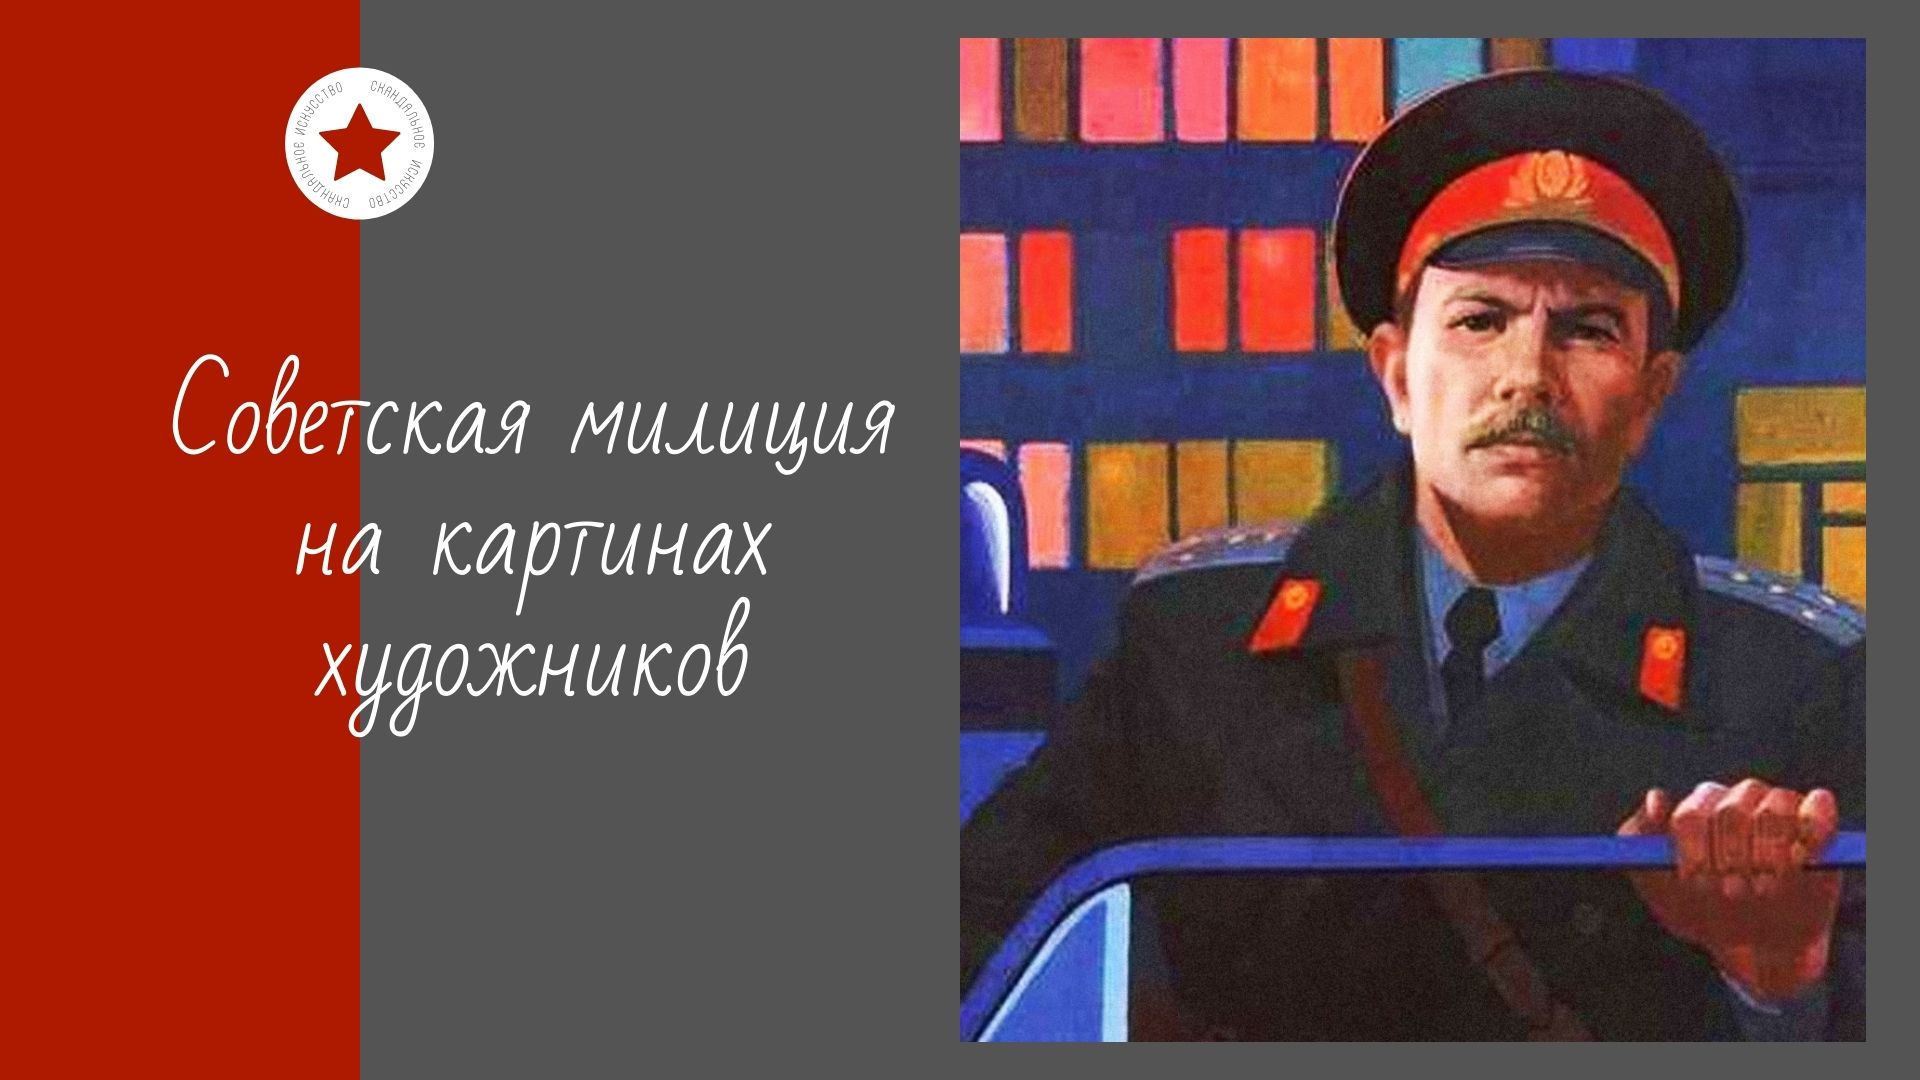 Советская милиция картины художников